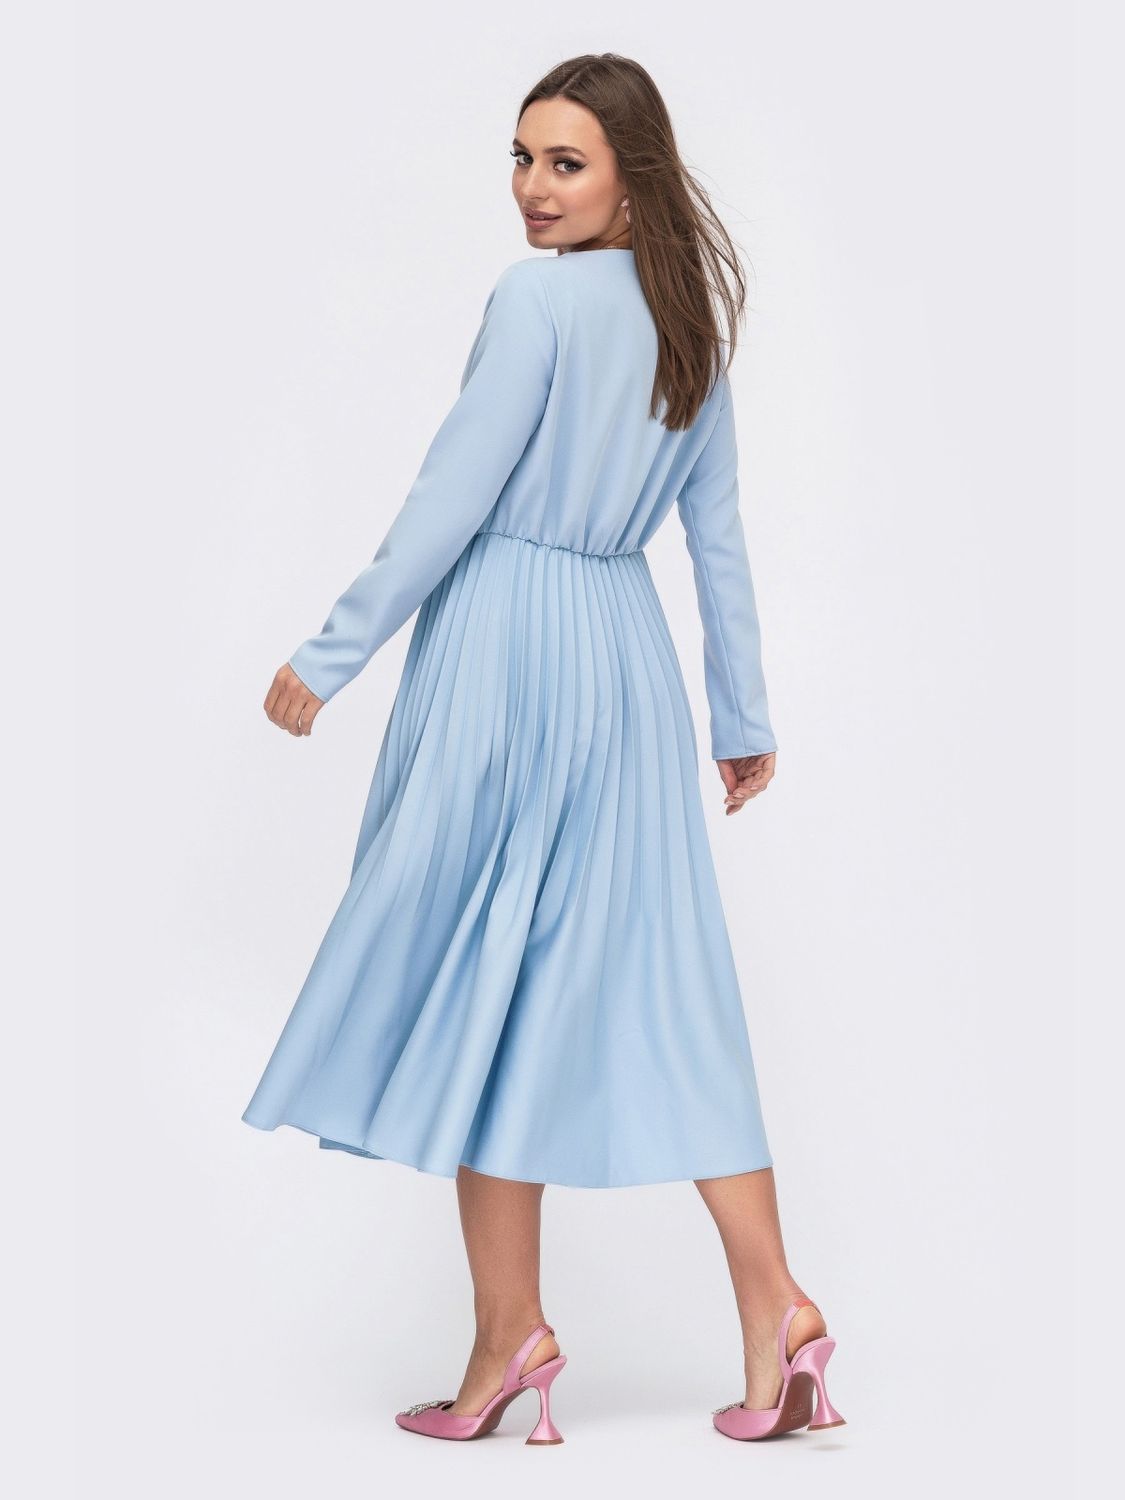 Гарне плаття зі спідницею сонце-кліш блакитне - фото